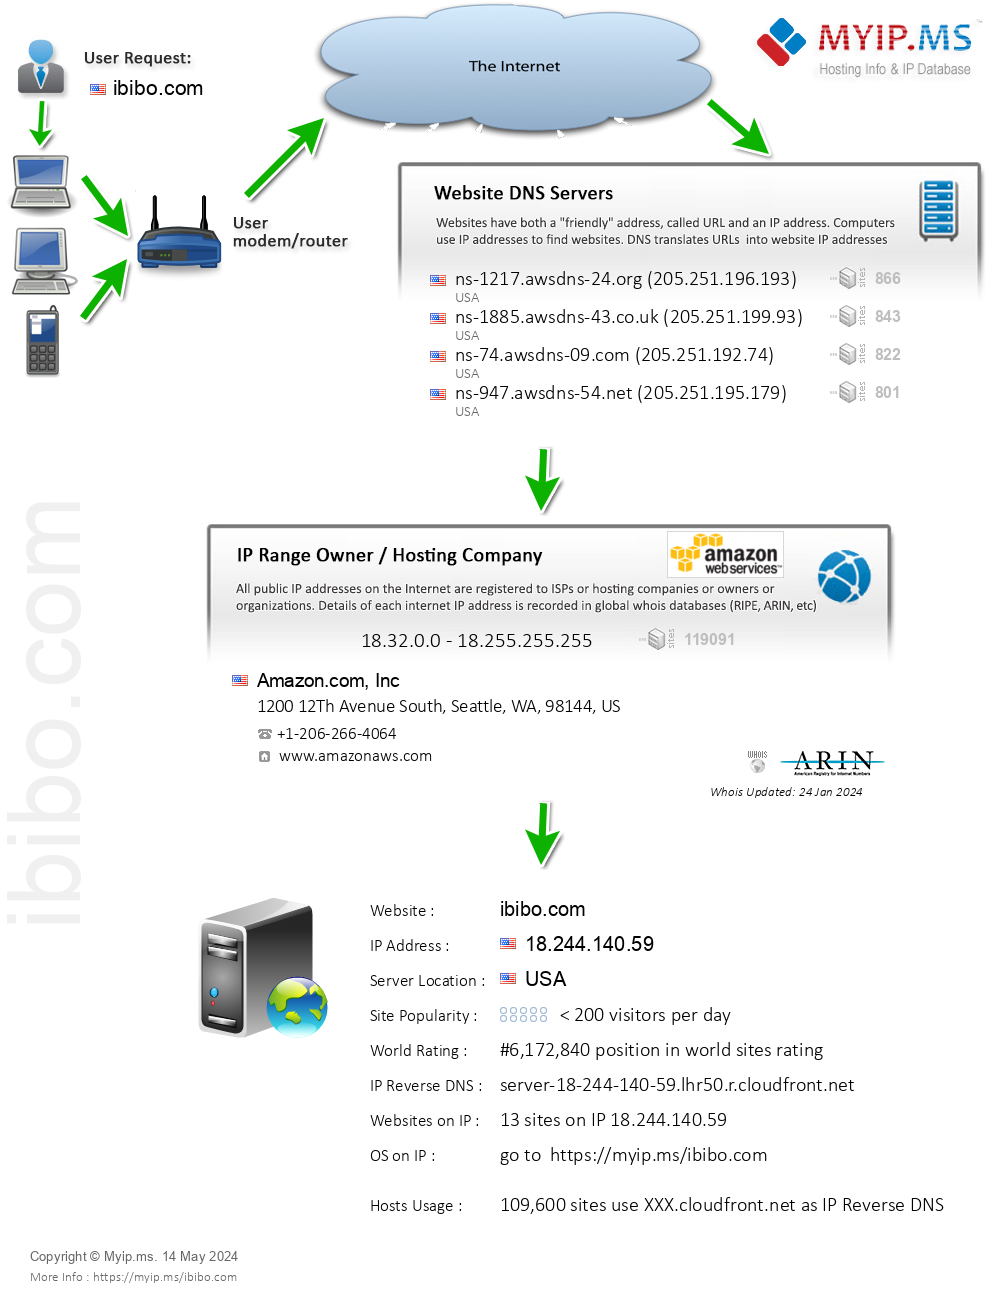 Ibibo.com - Website Hosting Visual IP Diagram